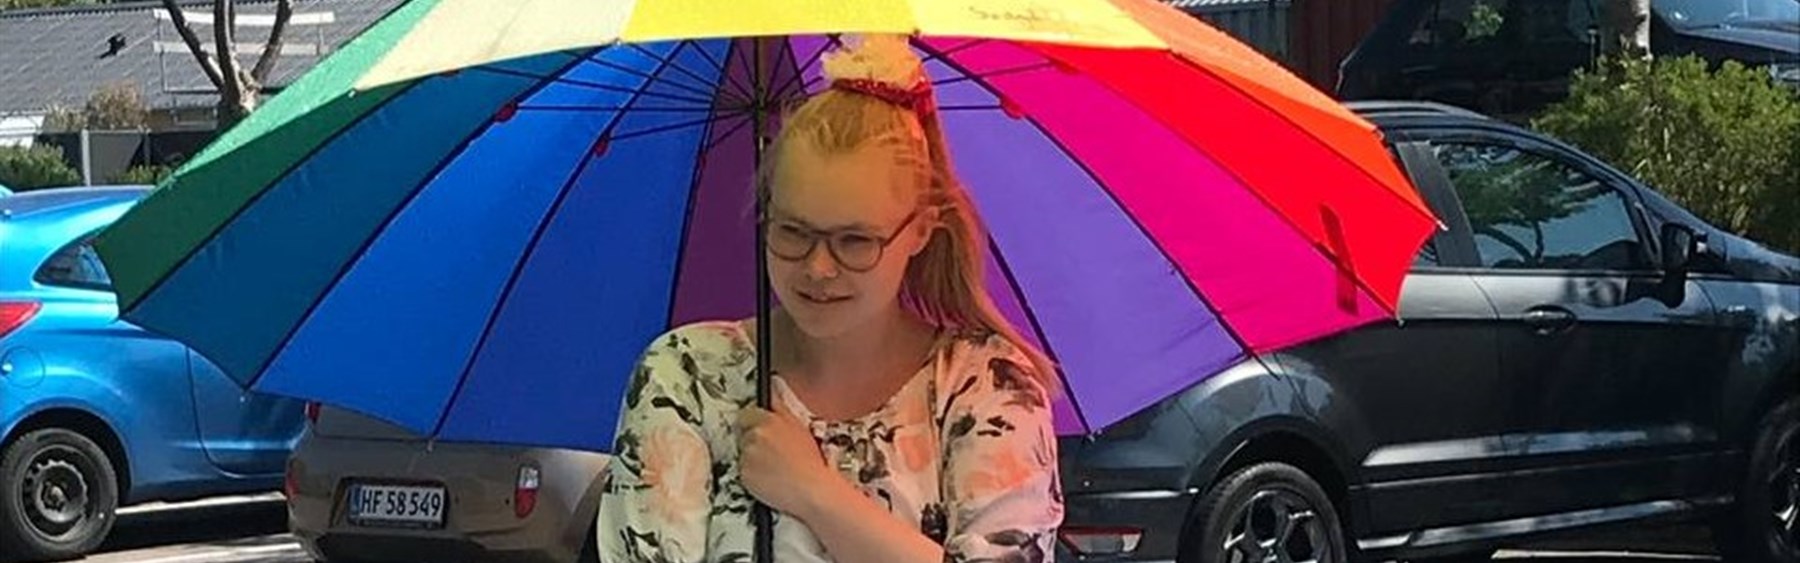 Pige med regnbuefarvet paraply.